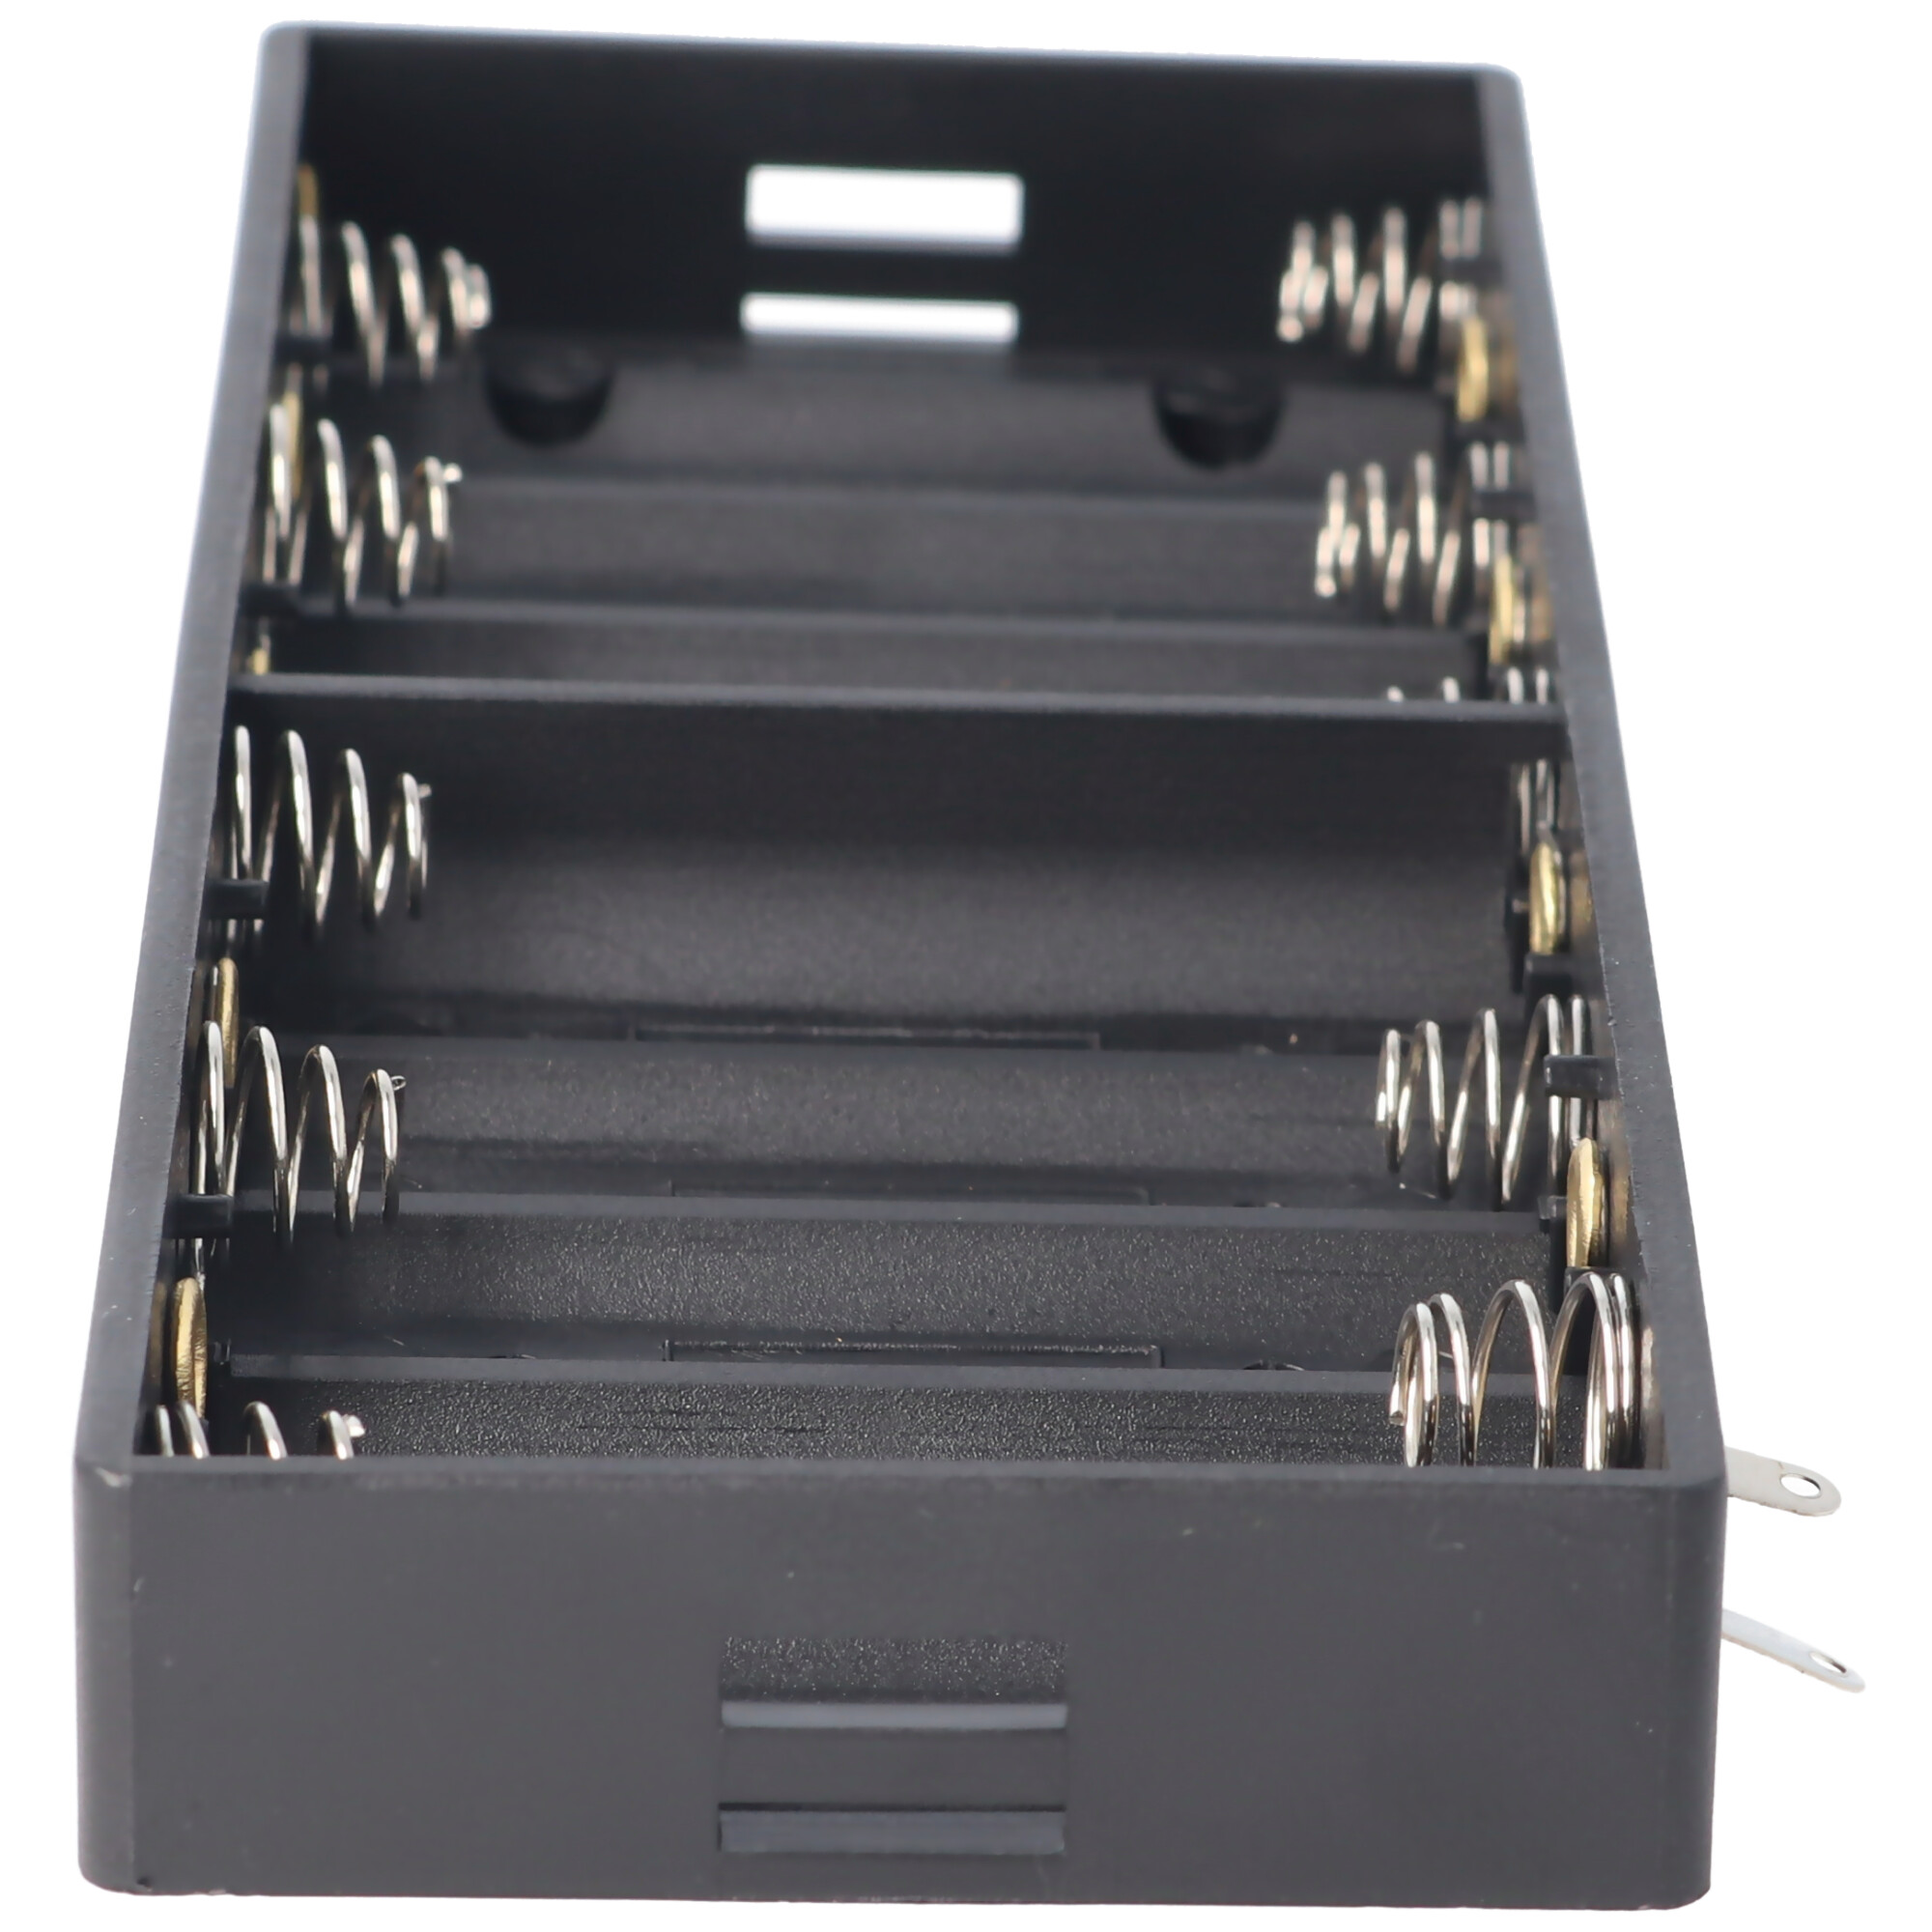 AccuCell Batteriehalter für 10 Mignon AA LR6 Nebeneinander Batterie, Akku